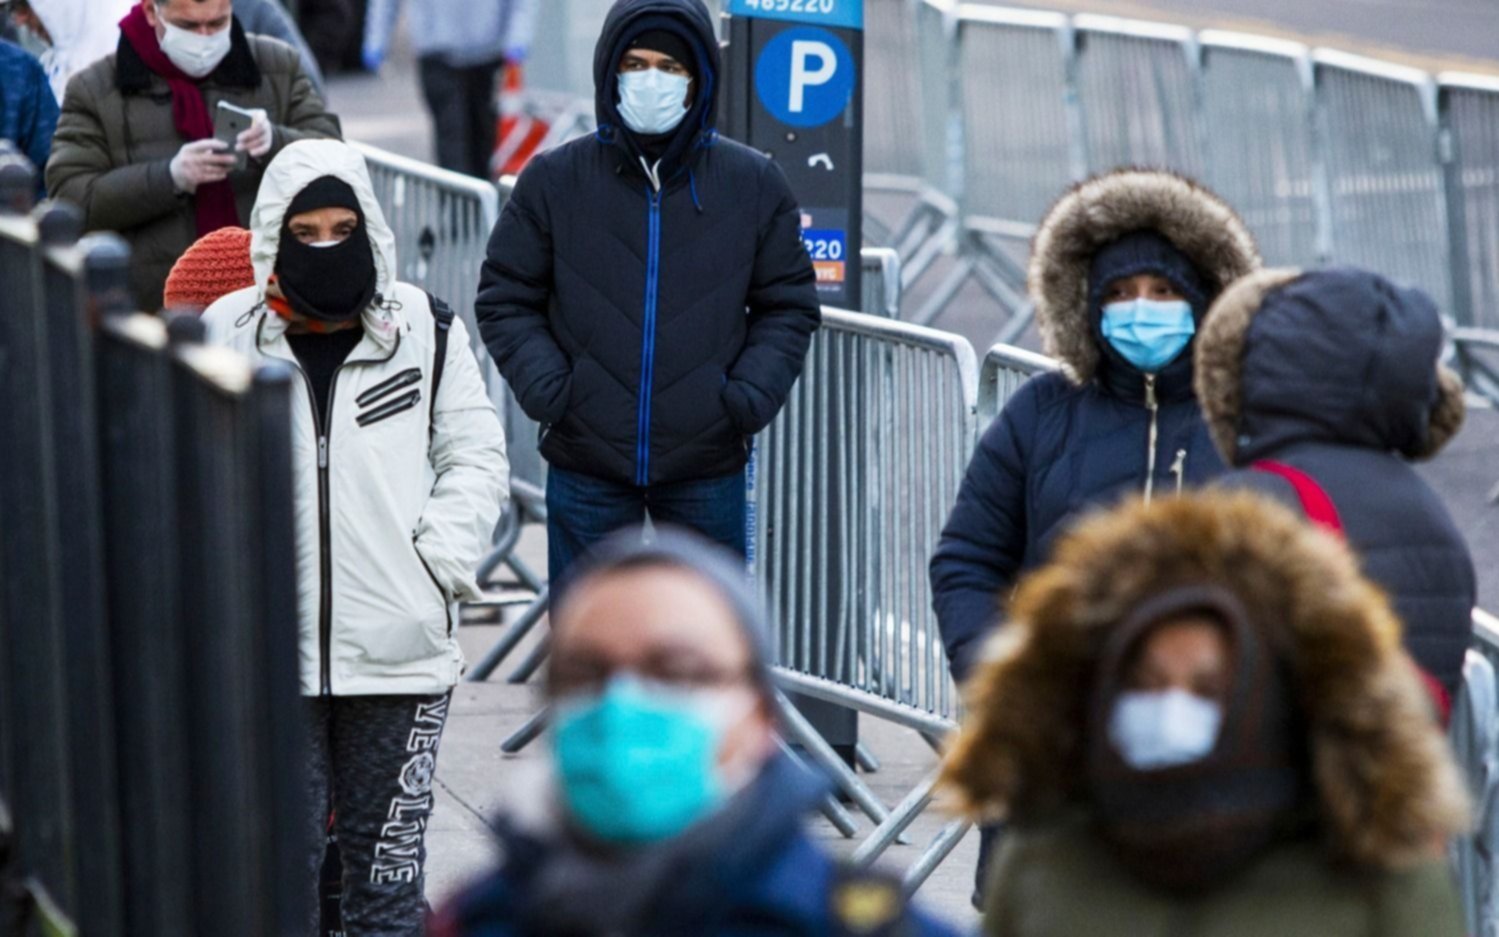 Tire y afloje sobre cómo afrontar nuevas pandemia